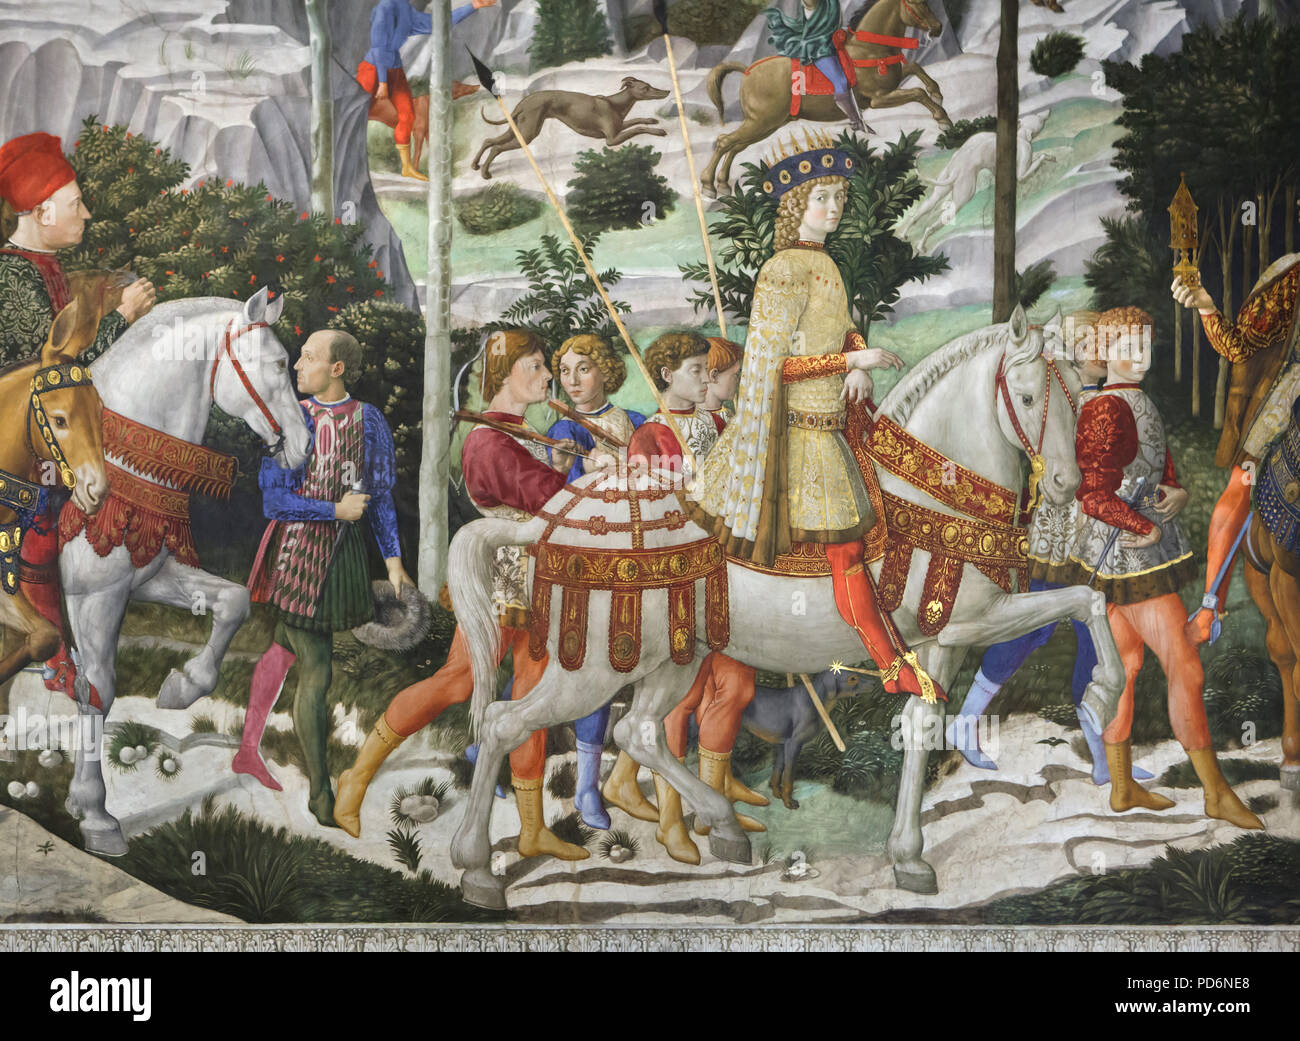 Lorenzo de' Medici auch als Lorenzo dem Prächtigen Pferd dargestellt, als Caspar der Magus in der Wandmalerei von der italienischen Renaissance Maler Benozzo Gozzoli in die Heiligen Drei Könige Kapelle im Palazzo Medici Riccardi in Florenz, Toskana, Italien. Stockfoto